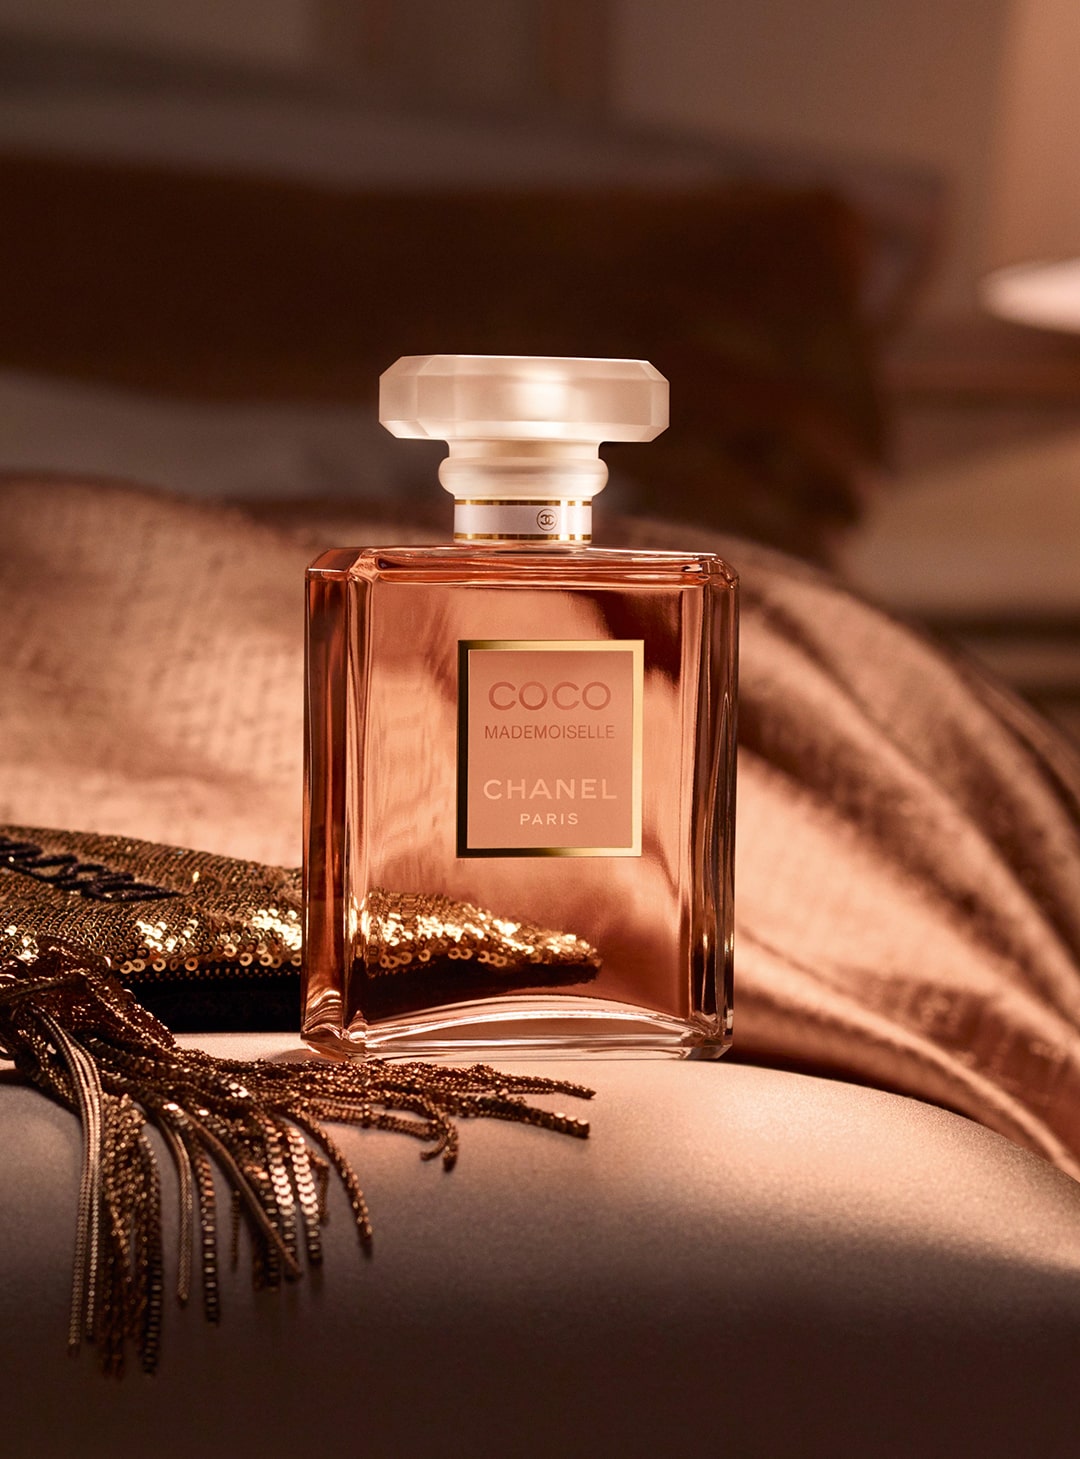 Chanel No.1 De Chanel L'Eau Rouge Fragrance Mist For Women 100ML – ROOYAS